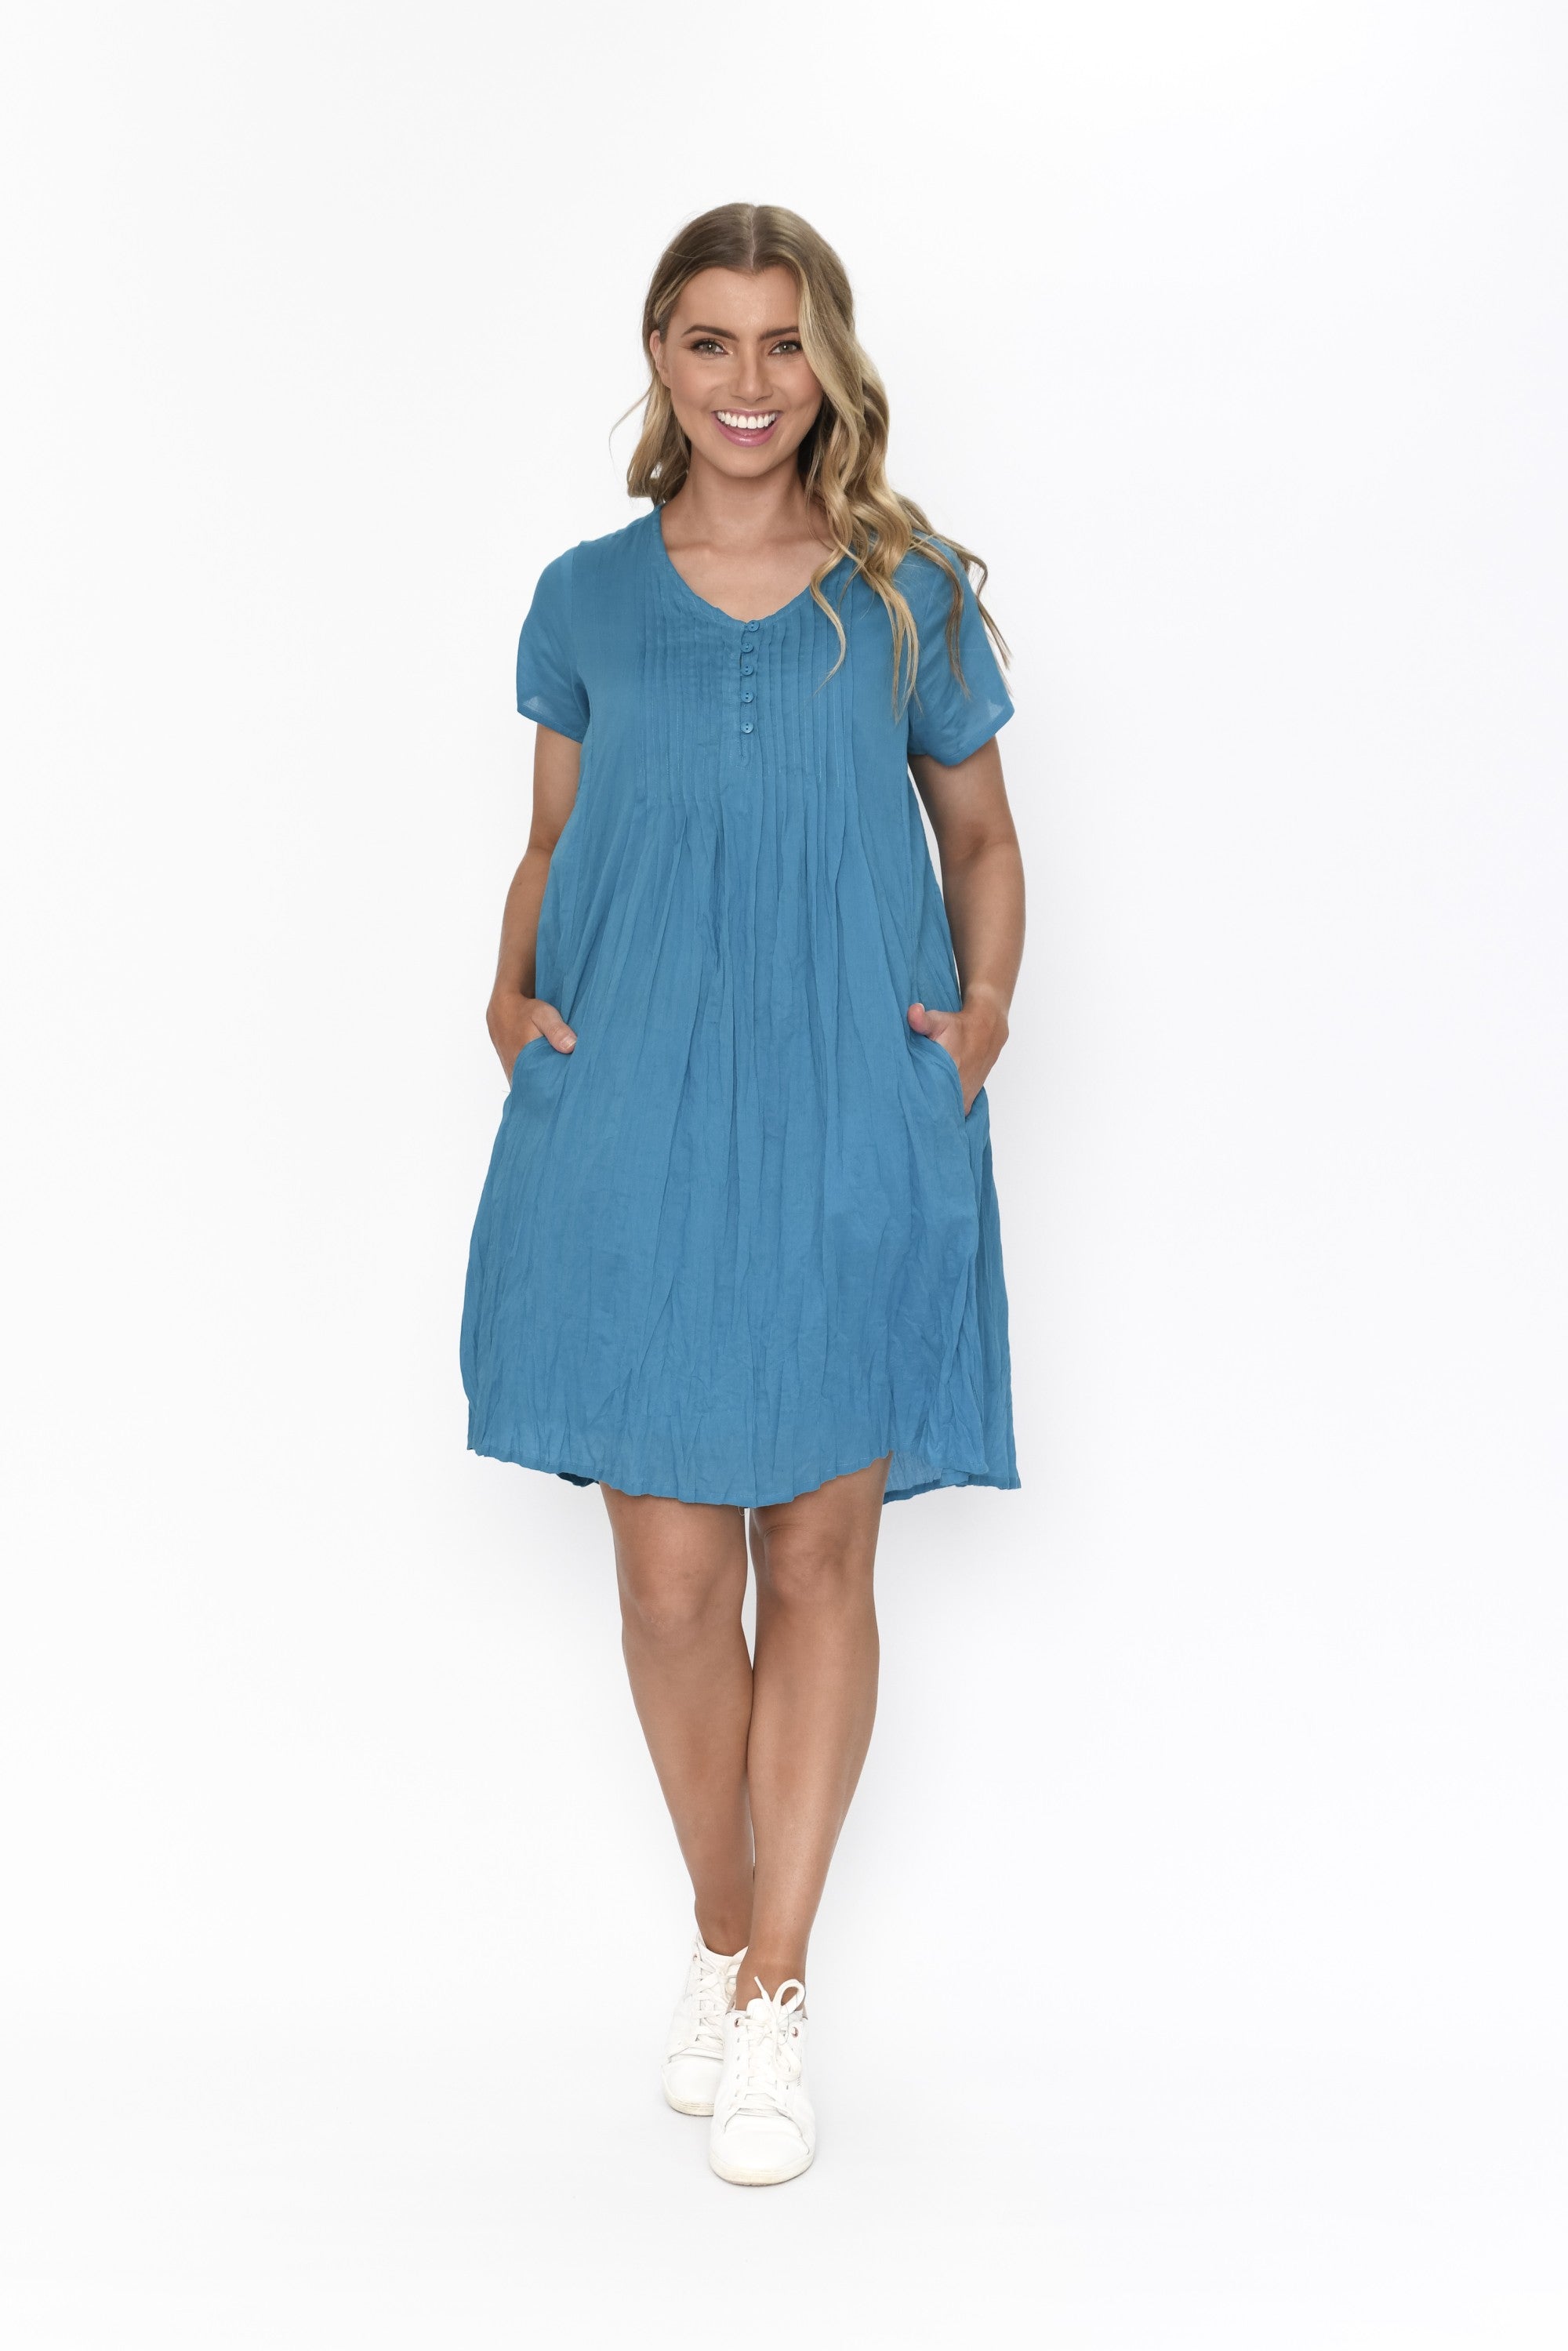 Taylor Dress - Jewel Blue